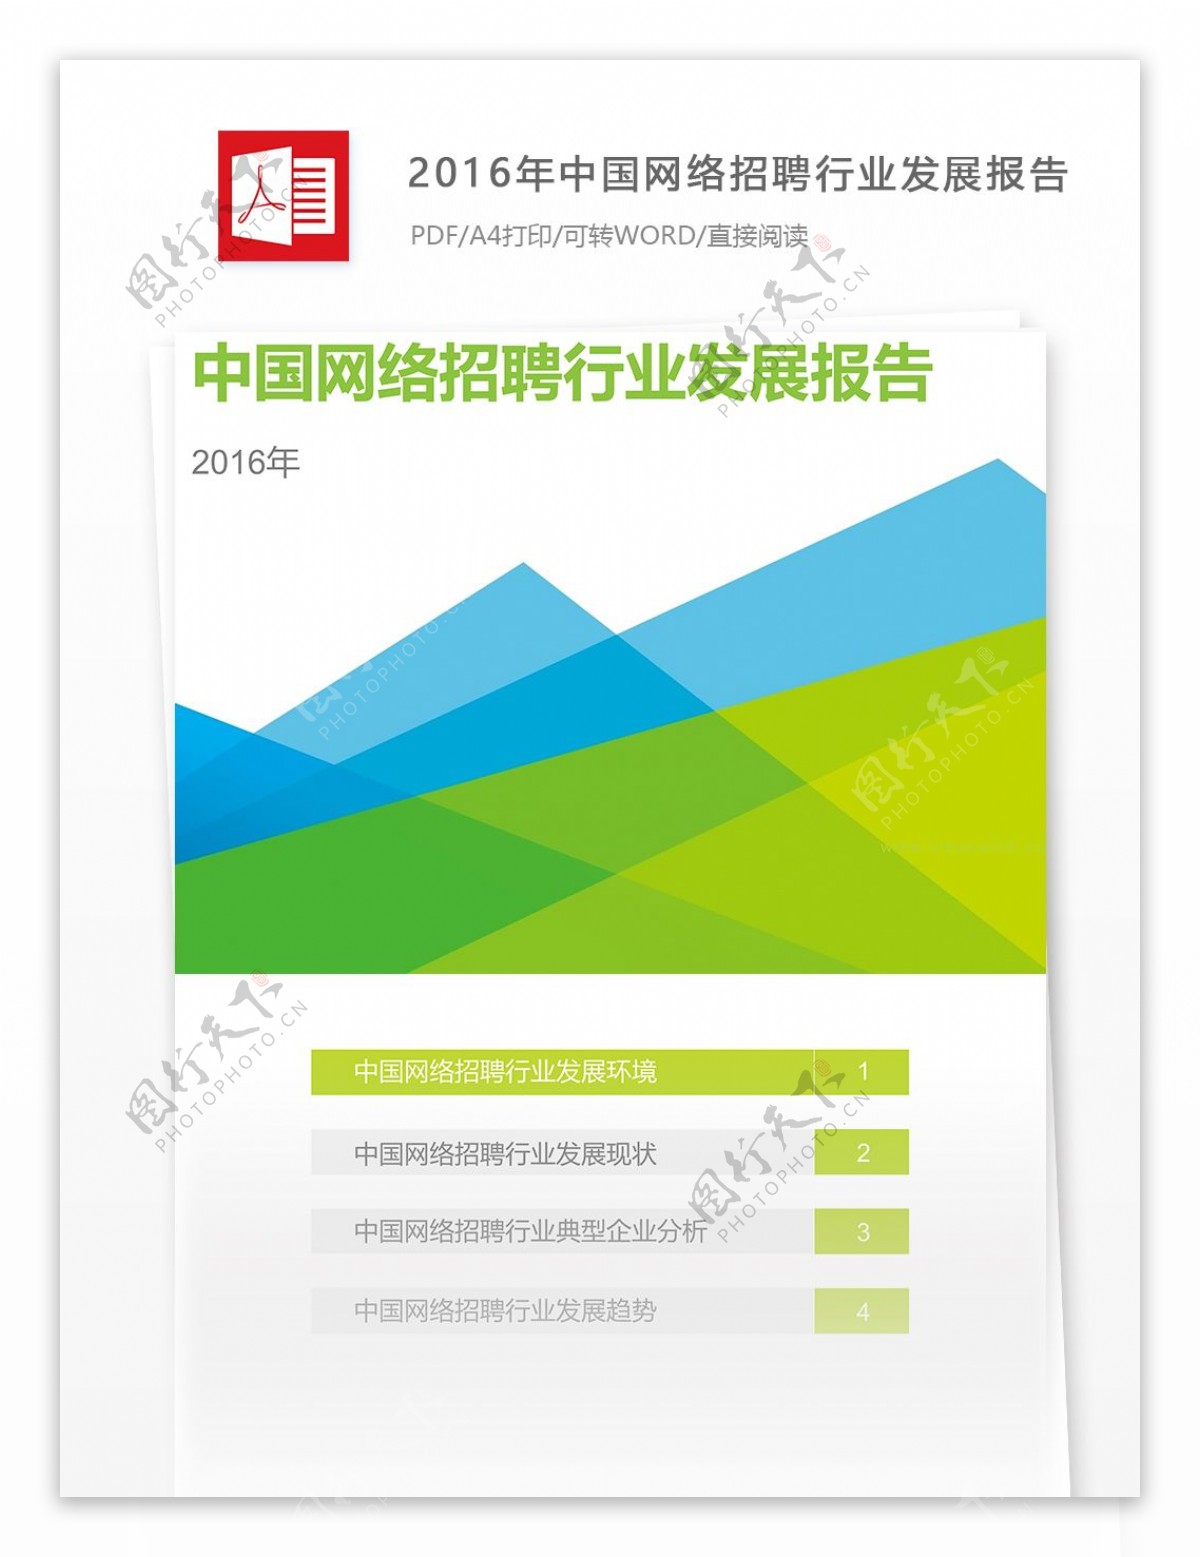 经典中国网络招聘行业发展互联网分析报告PDF